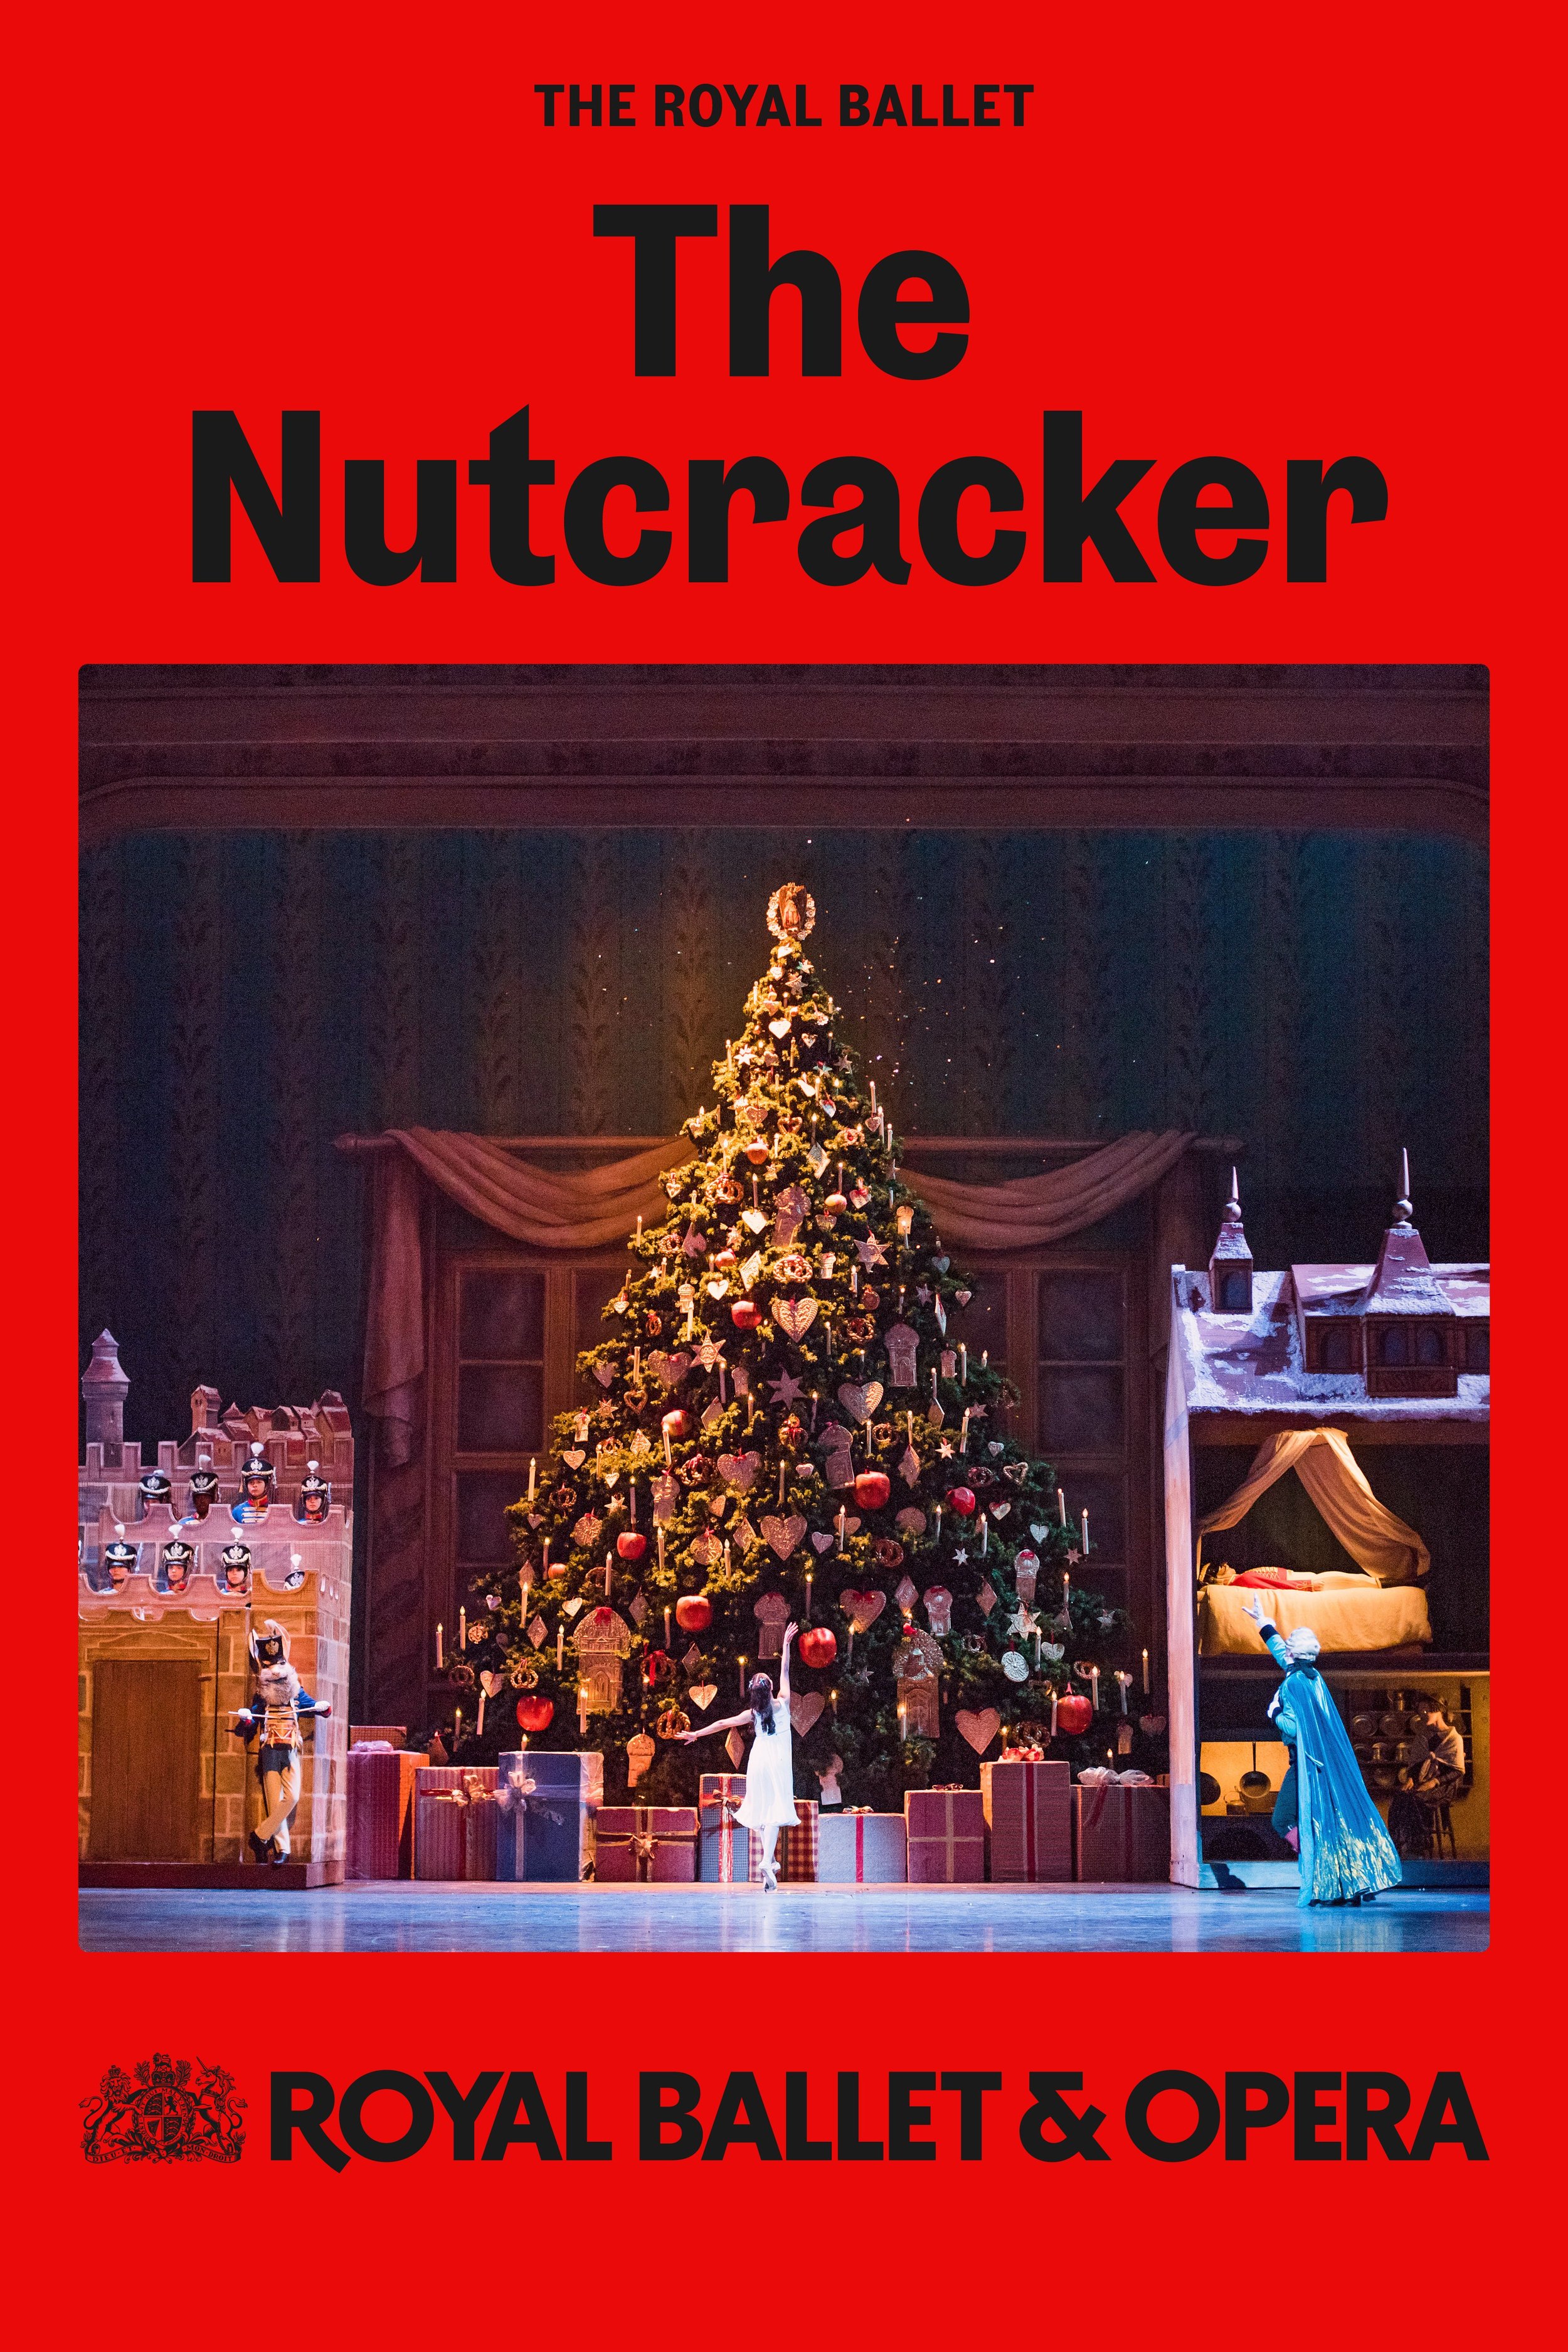 Royal Ballet and Opera: The Nutcracker